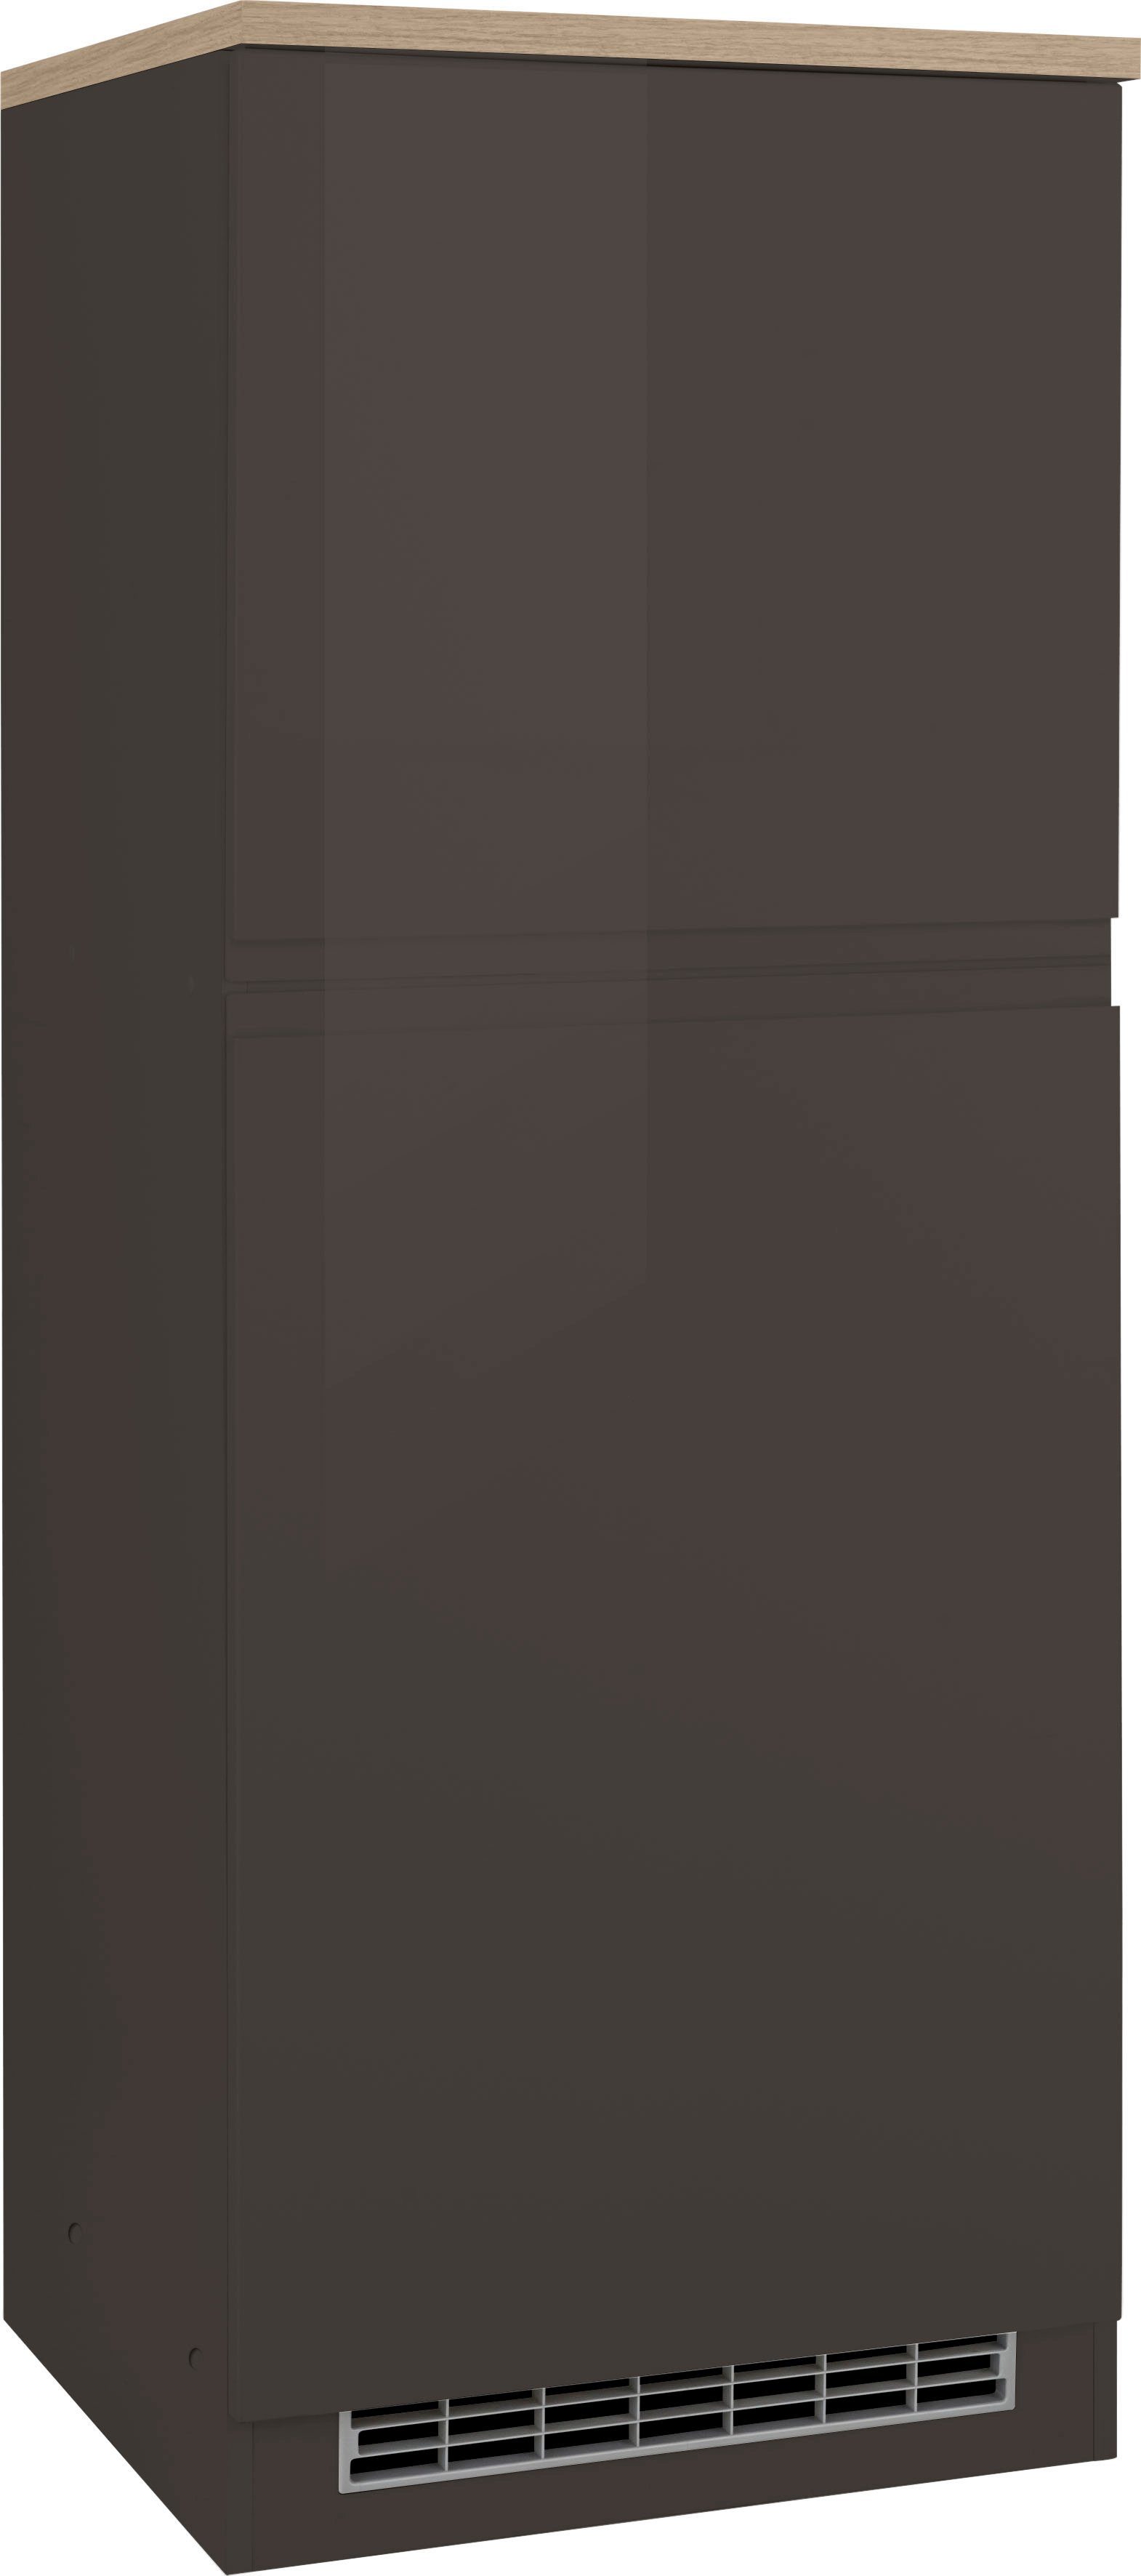 HELD MÖBEL Kühlumbauschrank Virginia 165 cm hoch, 60 cm breit, Nische für Kühlschrank: 56/88/55 cm, 2 Türen grau Hochglanz | grafit